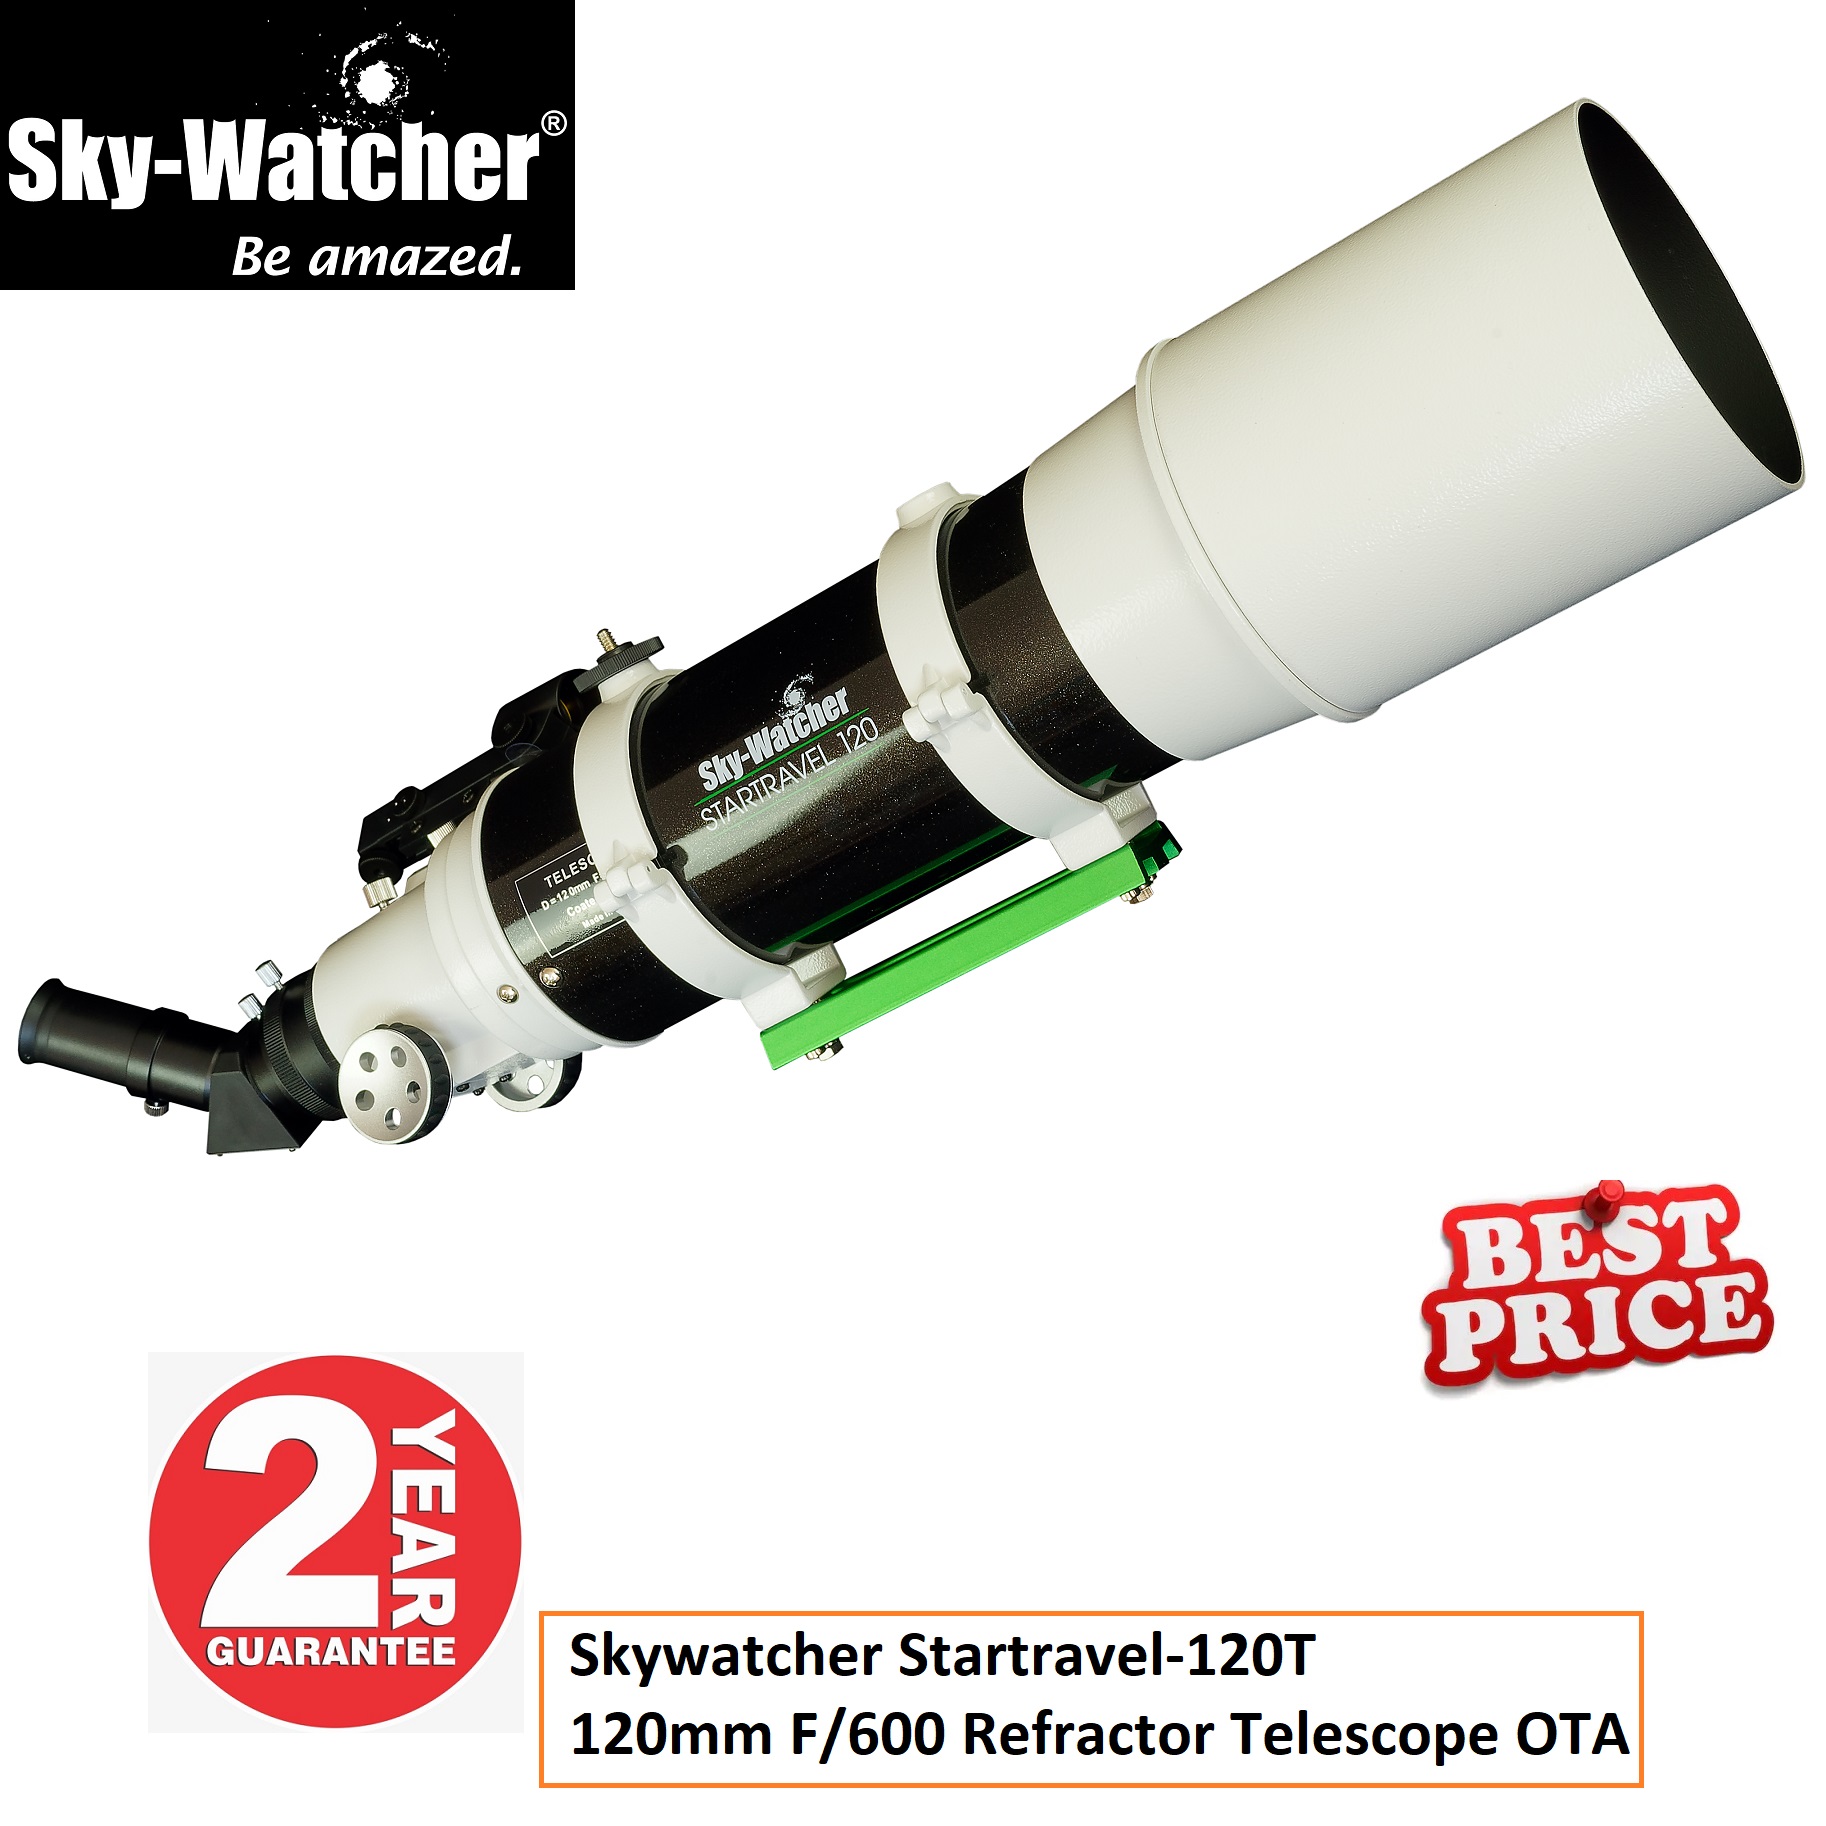 Skywatcher Startravel-120T 120mm F/600 Refractor Telescope OTA